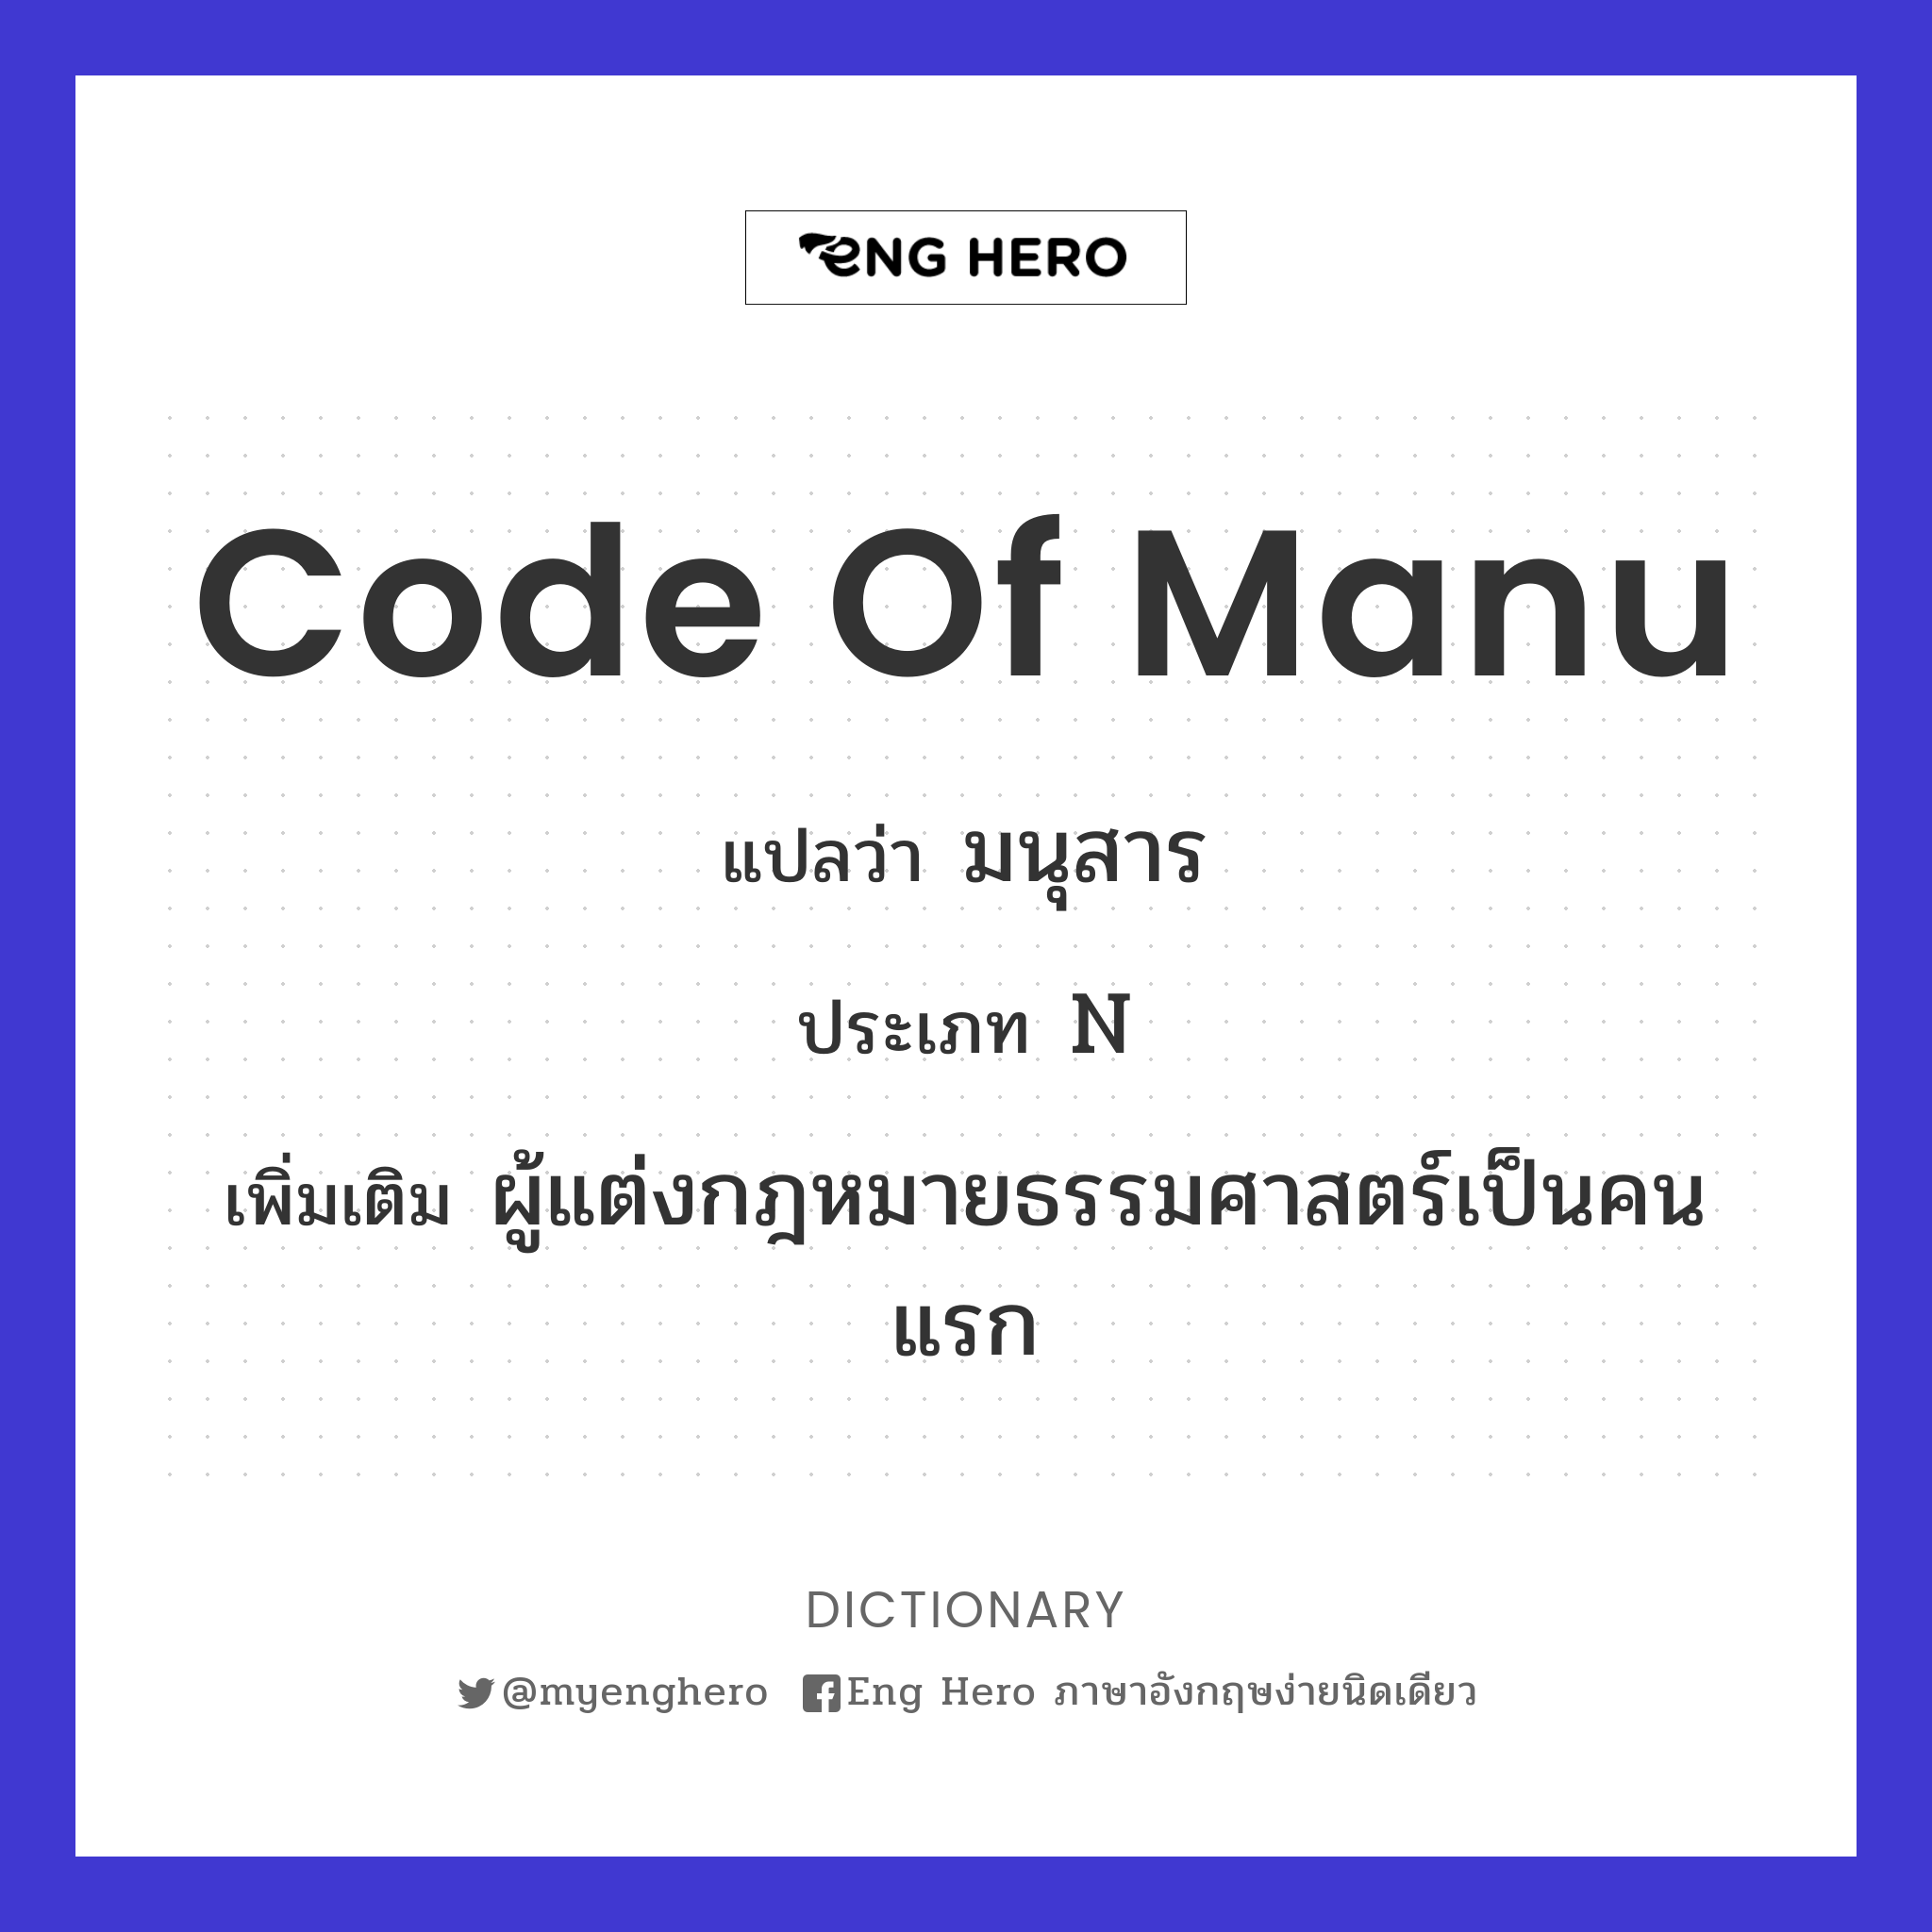 Code of Manu